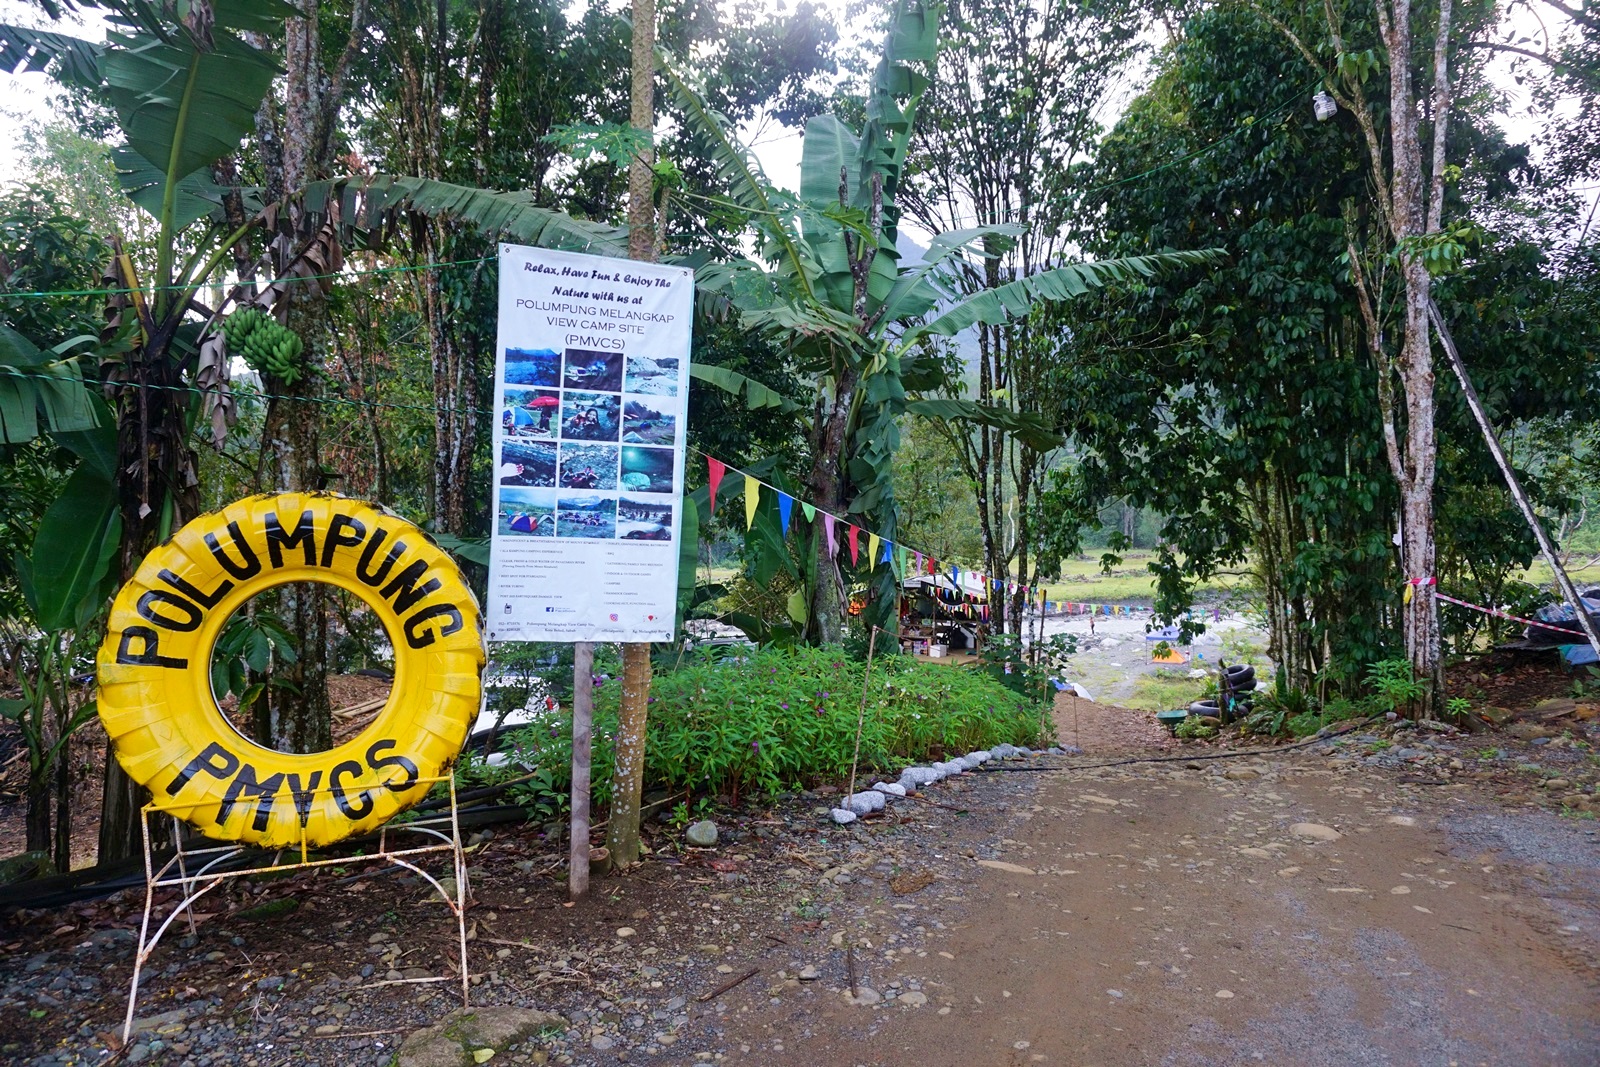 kEv!n: Polumpung Melangkap View Camp Site @ Kota Belud, Sabah